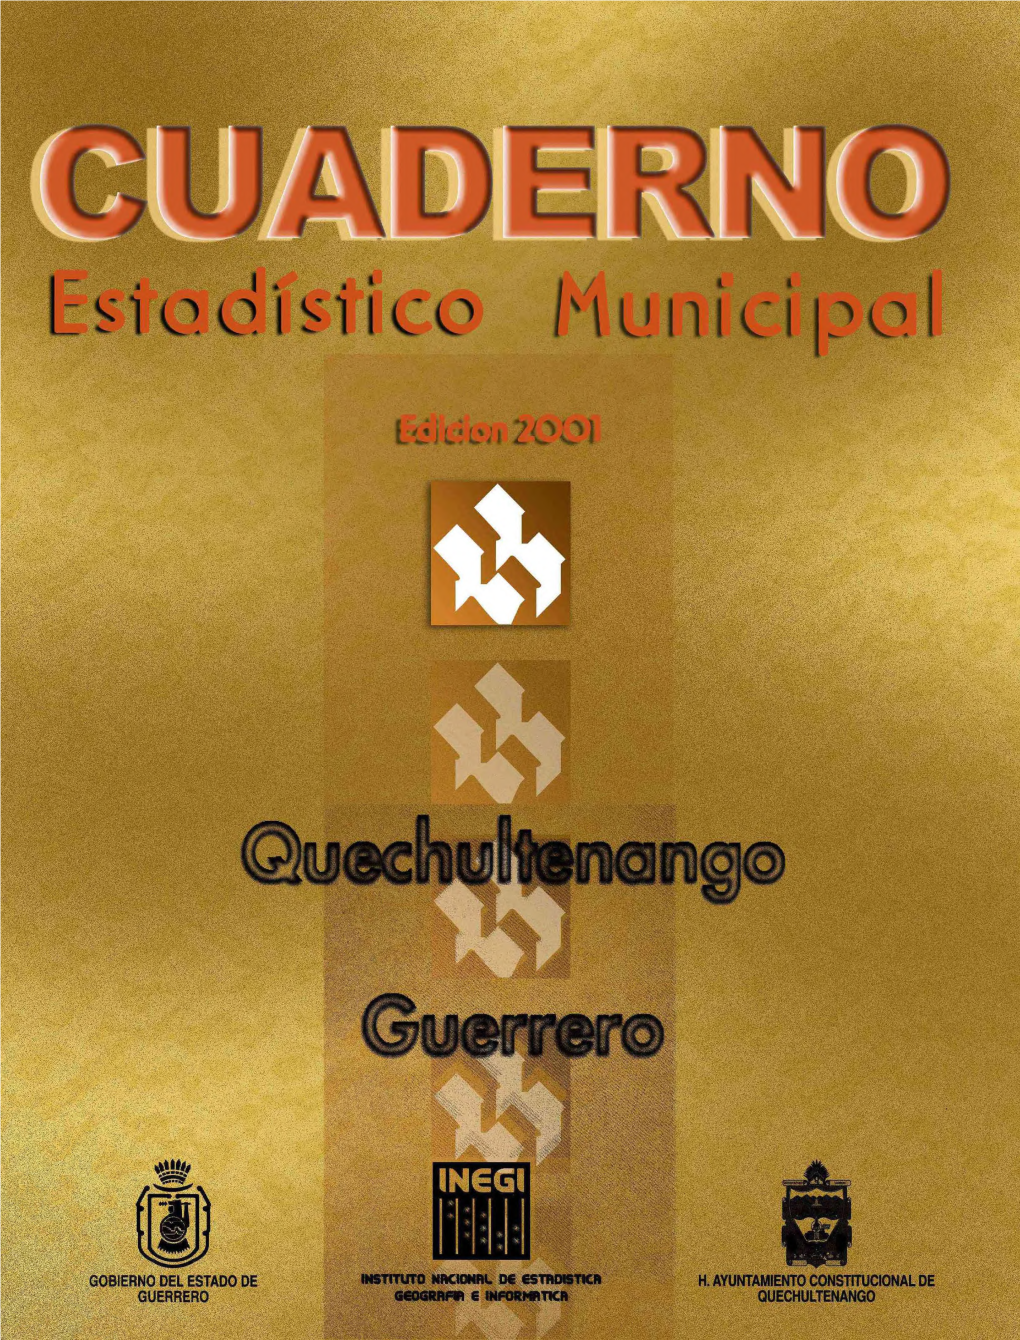 Quechultenango Guerrero : Cuaderno Estadístico Municipal 2001